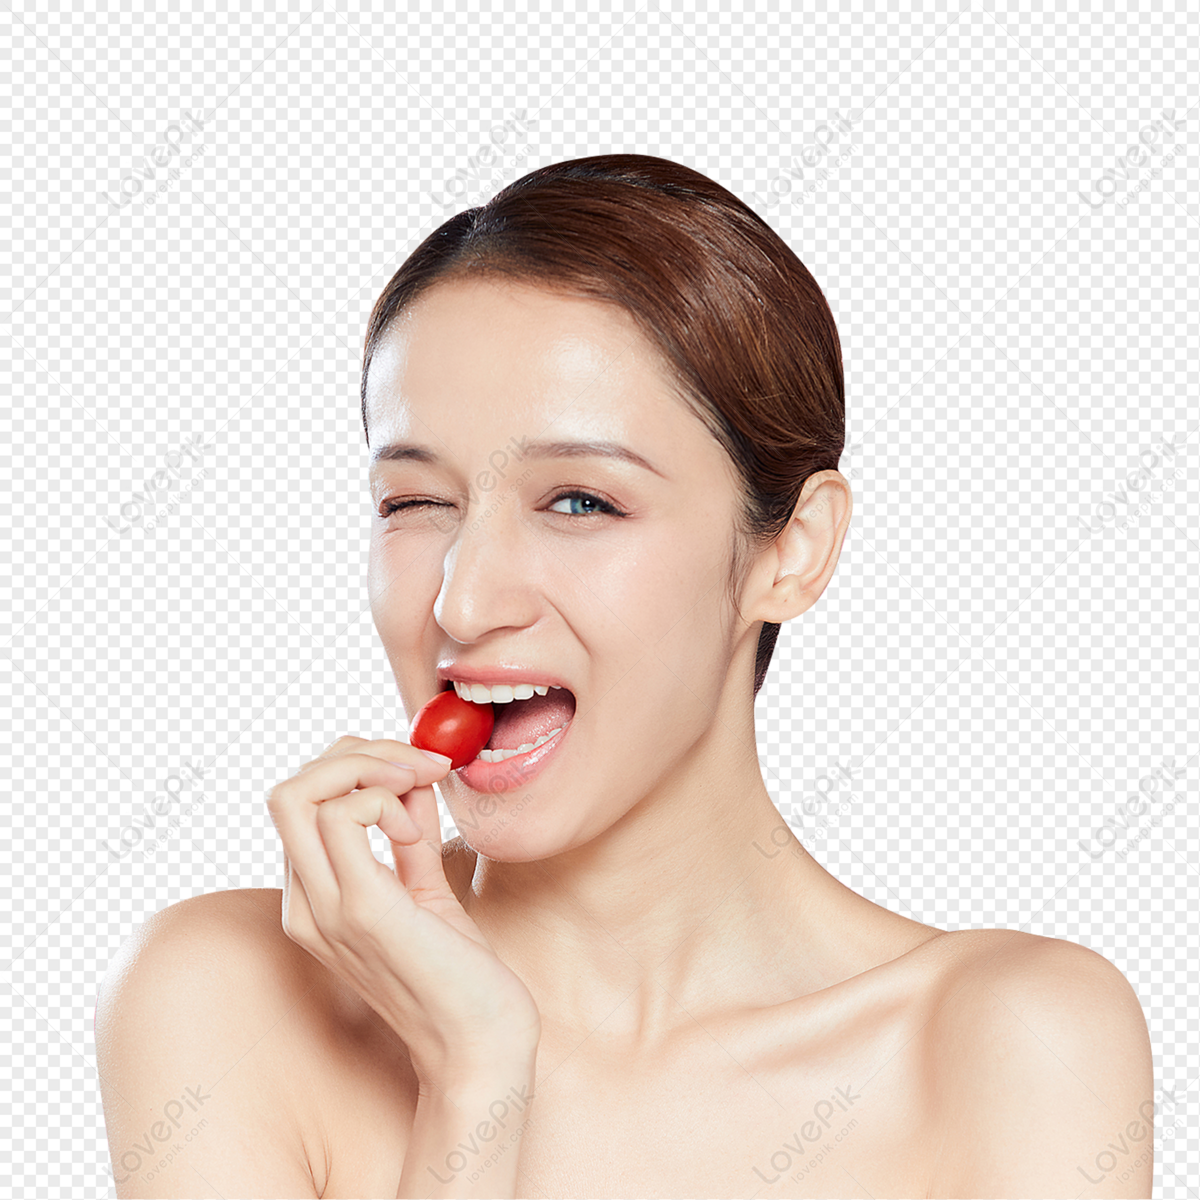 有秀丽构成的性感的妇女吃冰淇凌的 库存图片. 图片 包括有 - 112680425